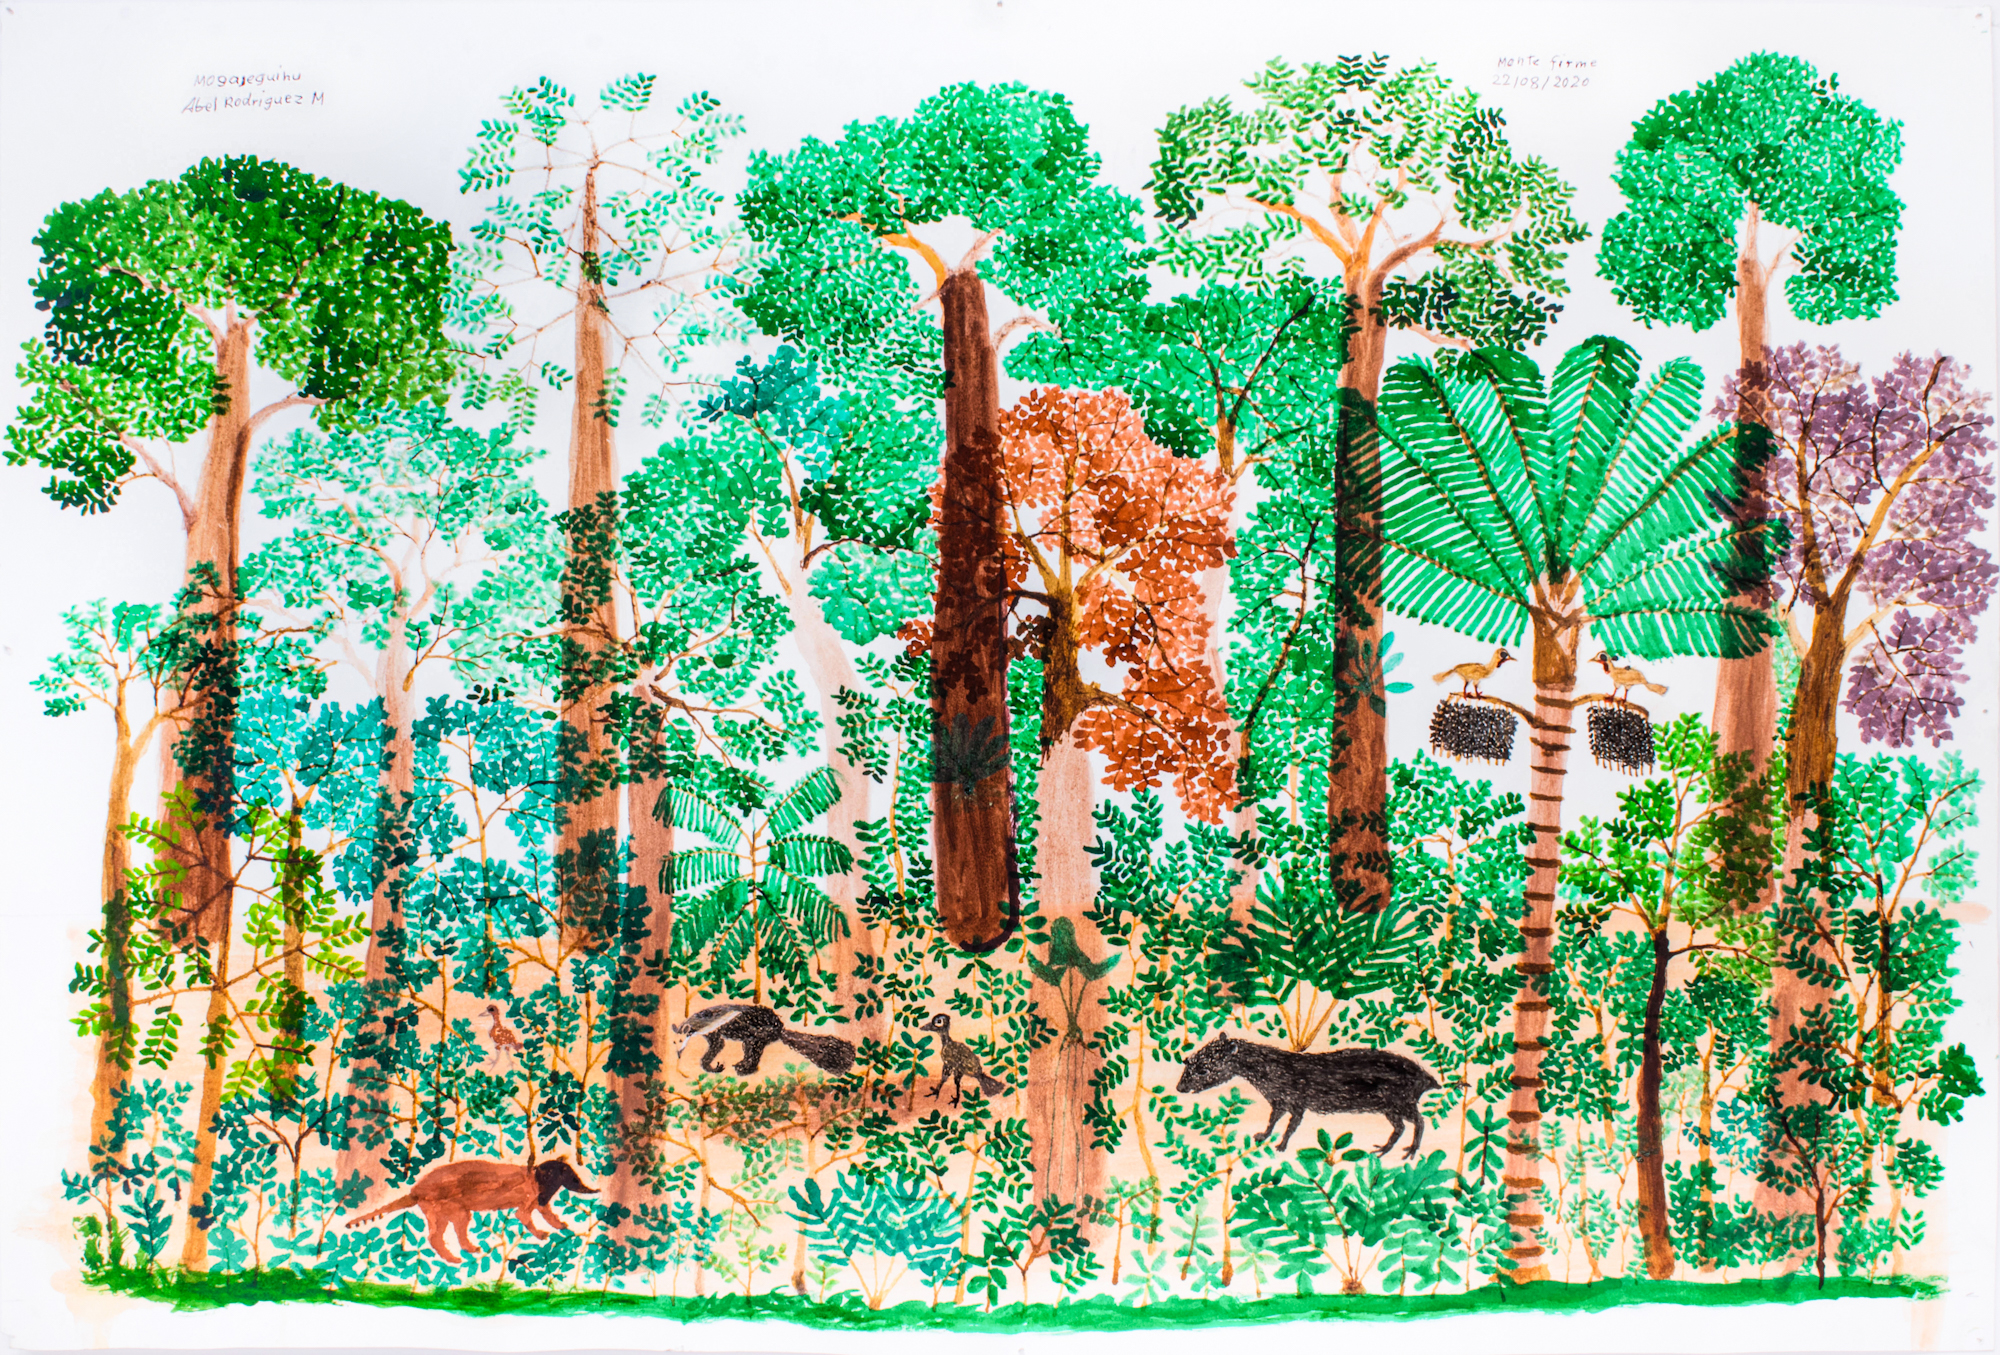 Une illustration d'une jungle dense montrant des arbres et des plantes, avec des animaux.  Lectures manuscrites : Monte Firme 22/08/2020